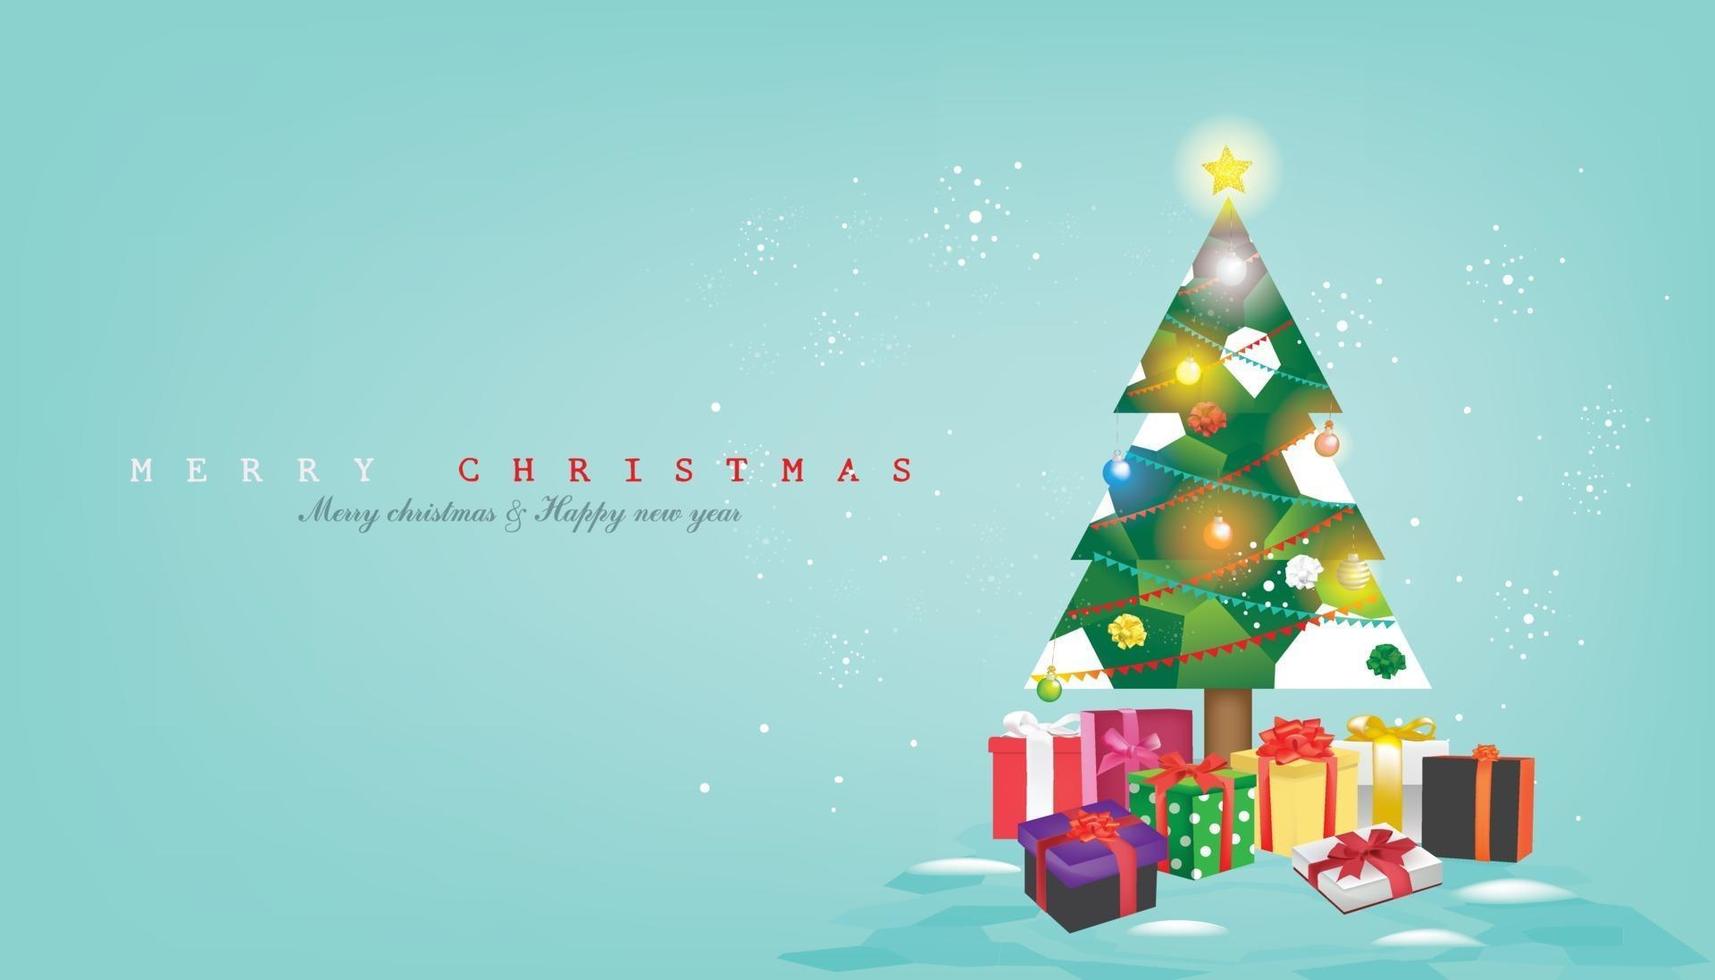 Weihnachtsbaum mit Buntglasfenster auf dem Minzhintergrund, verziert mit Weihnachtskugeln, Bändern, Partyflaggen, glänzendem Stern, Schneeflocken, Vektorillustration für Flieger, Fahne usw. vektor